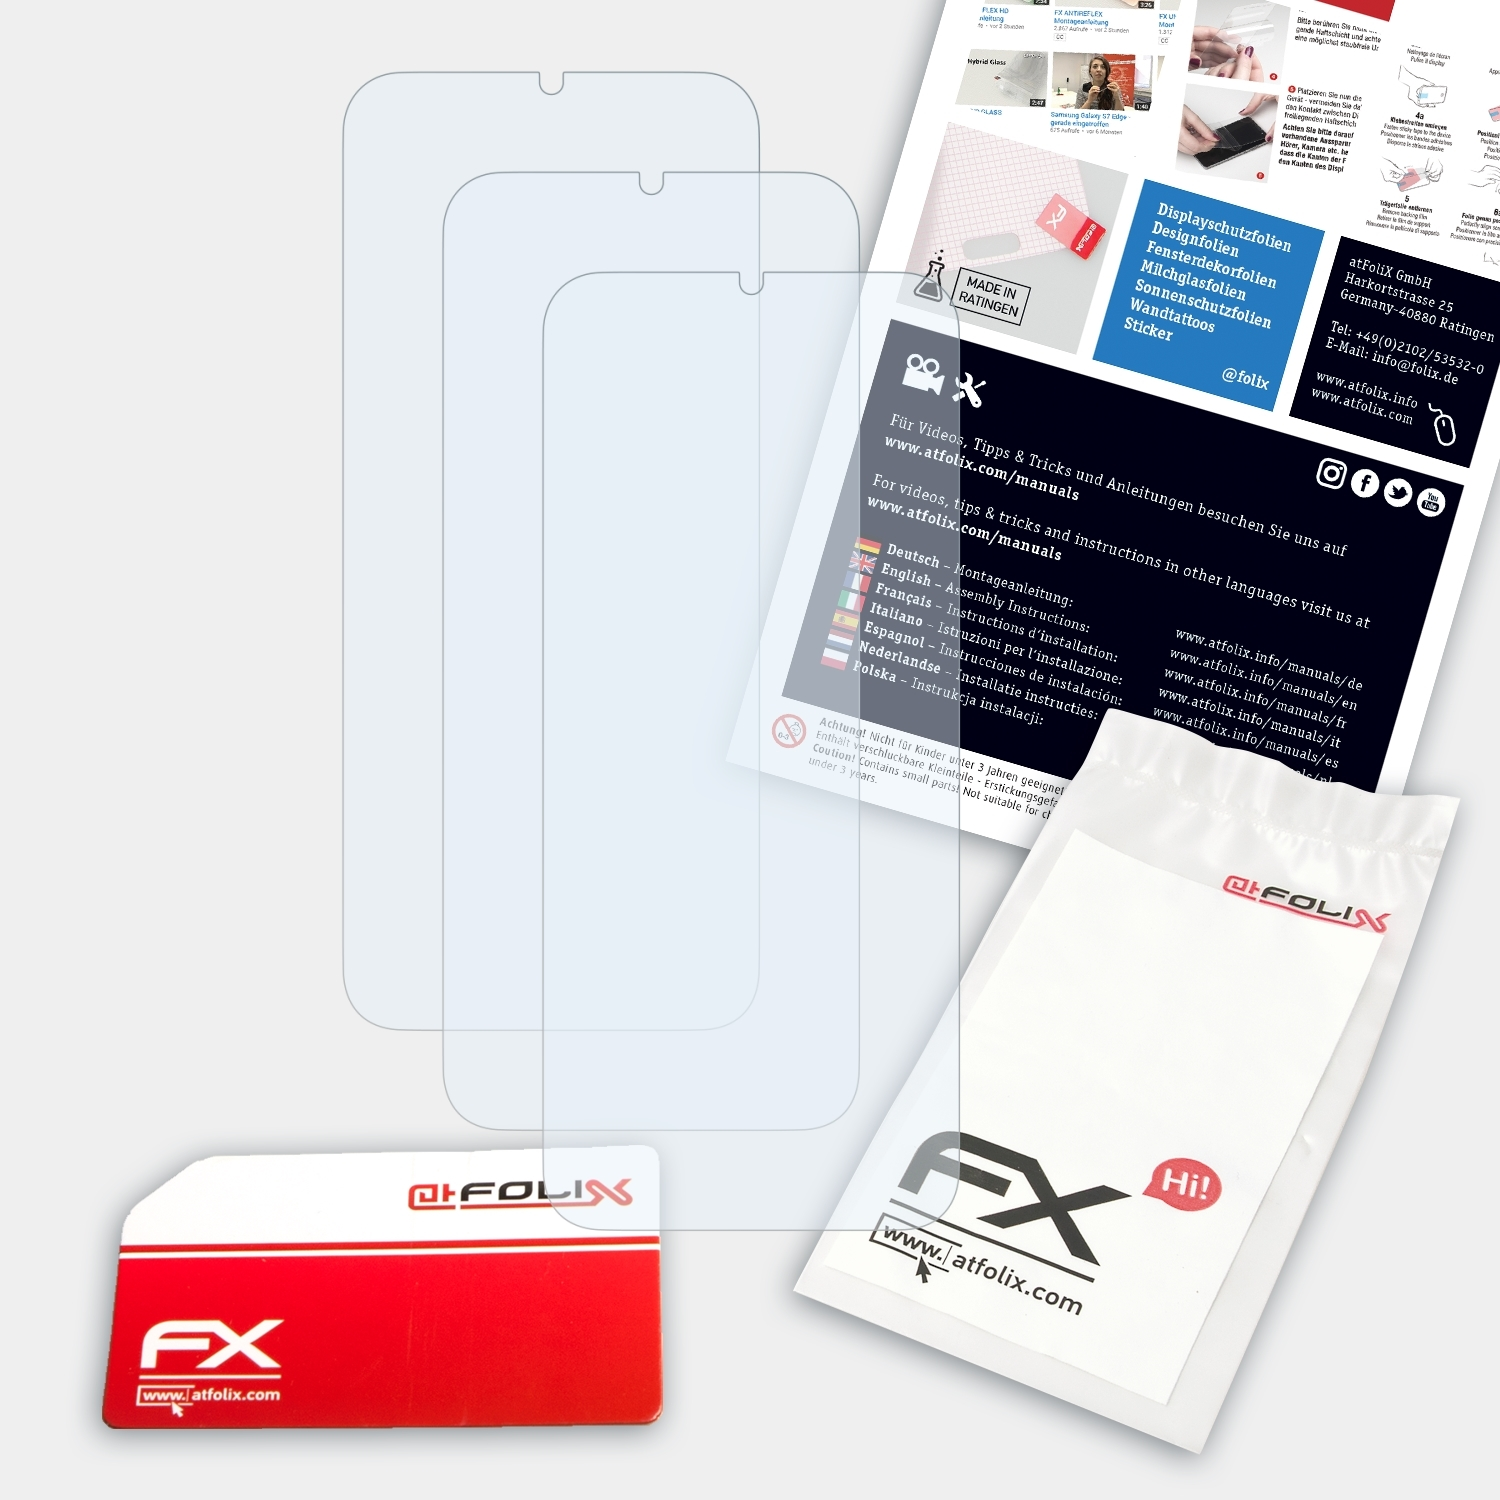 Power) E7 Moto FX-Clear Motorola 3x Displayschutz(für ATFOLIX